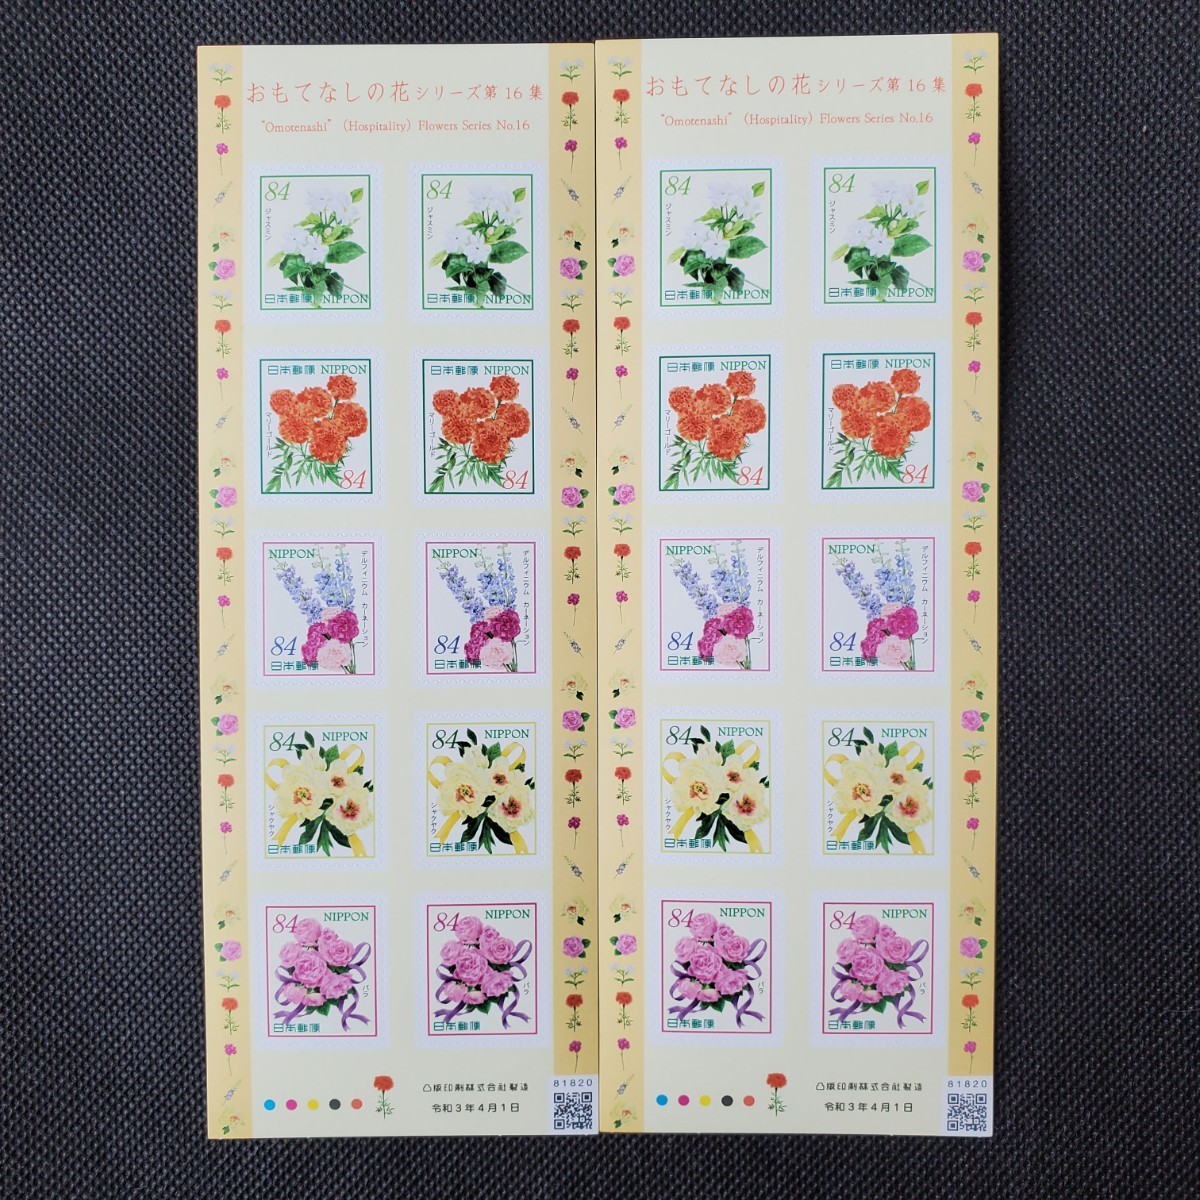 84円切手シート 2シート  枚数組み合わせ調整出来ます クーポンで額面割れ 特殊切手 記念切手